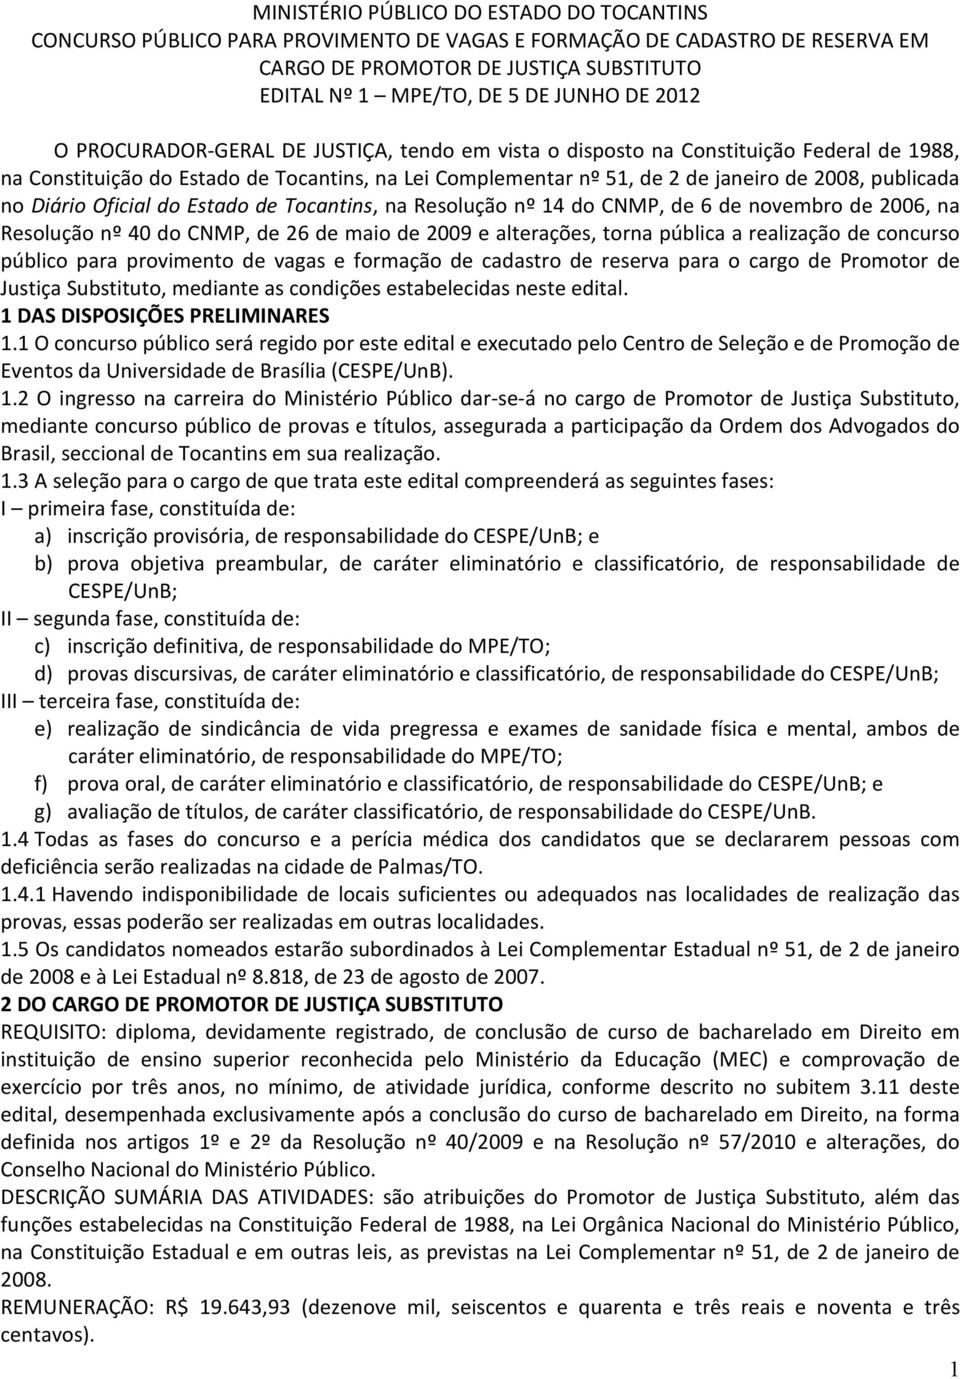 Diário Oficial do Estado de Tocantins, na Resolução nº 14 do CNMP, de 6 de novembro de 2006, na Resolução nº 40 do CNMP, de 26 de maio de 2009 e alterações, torna pública a realização de concurso